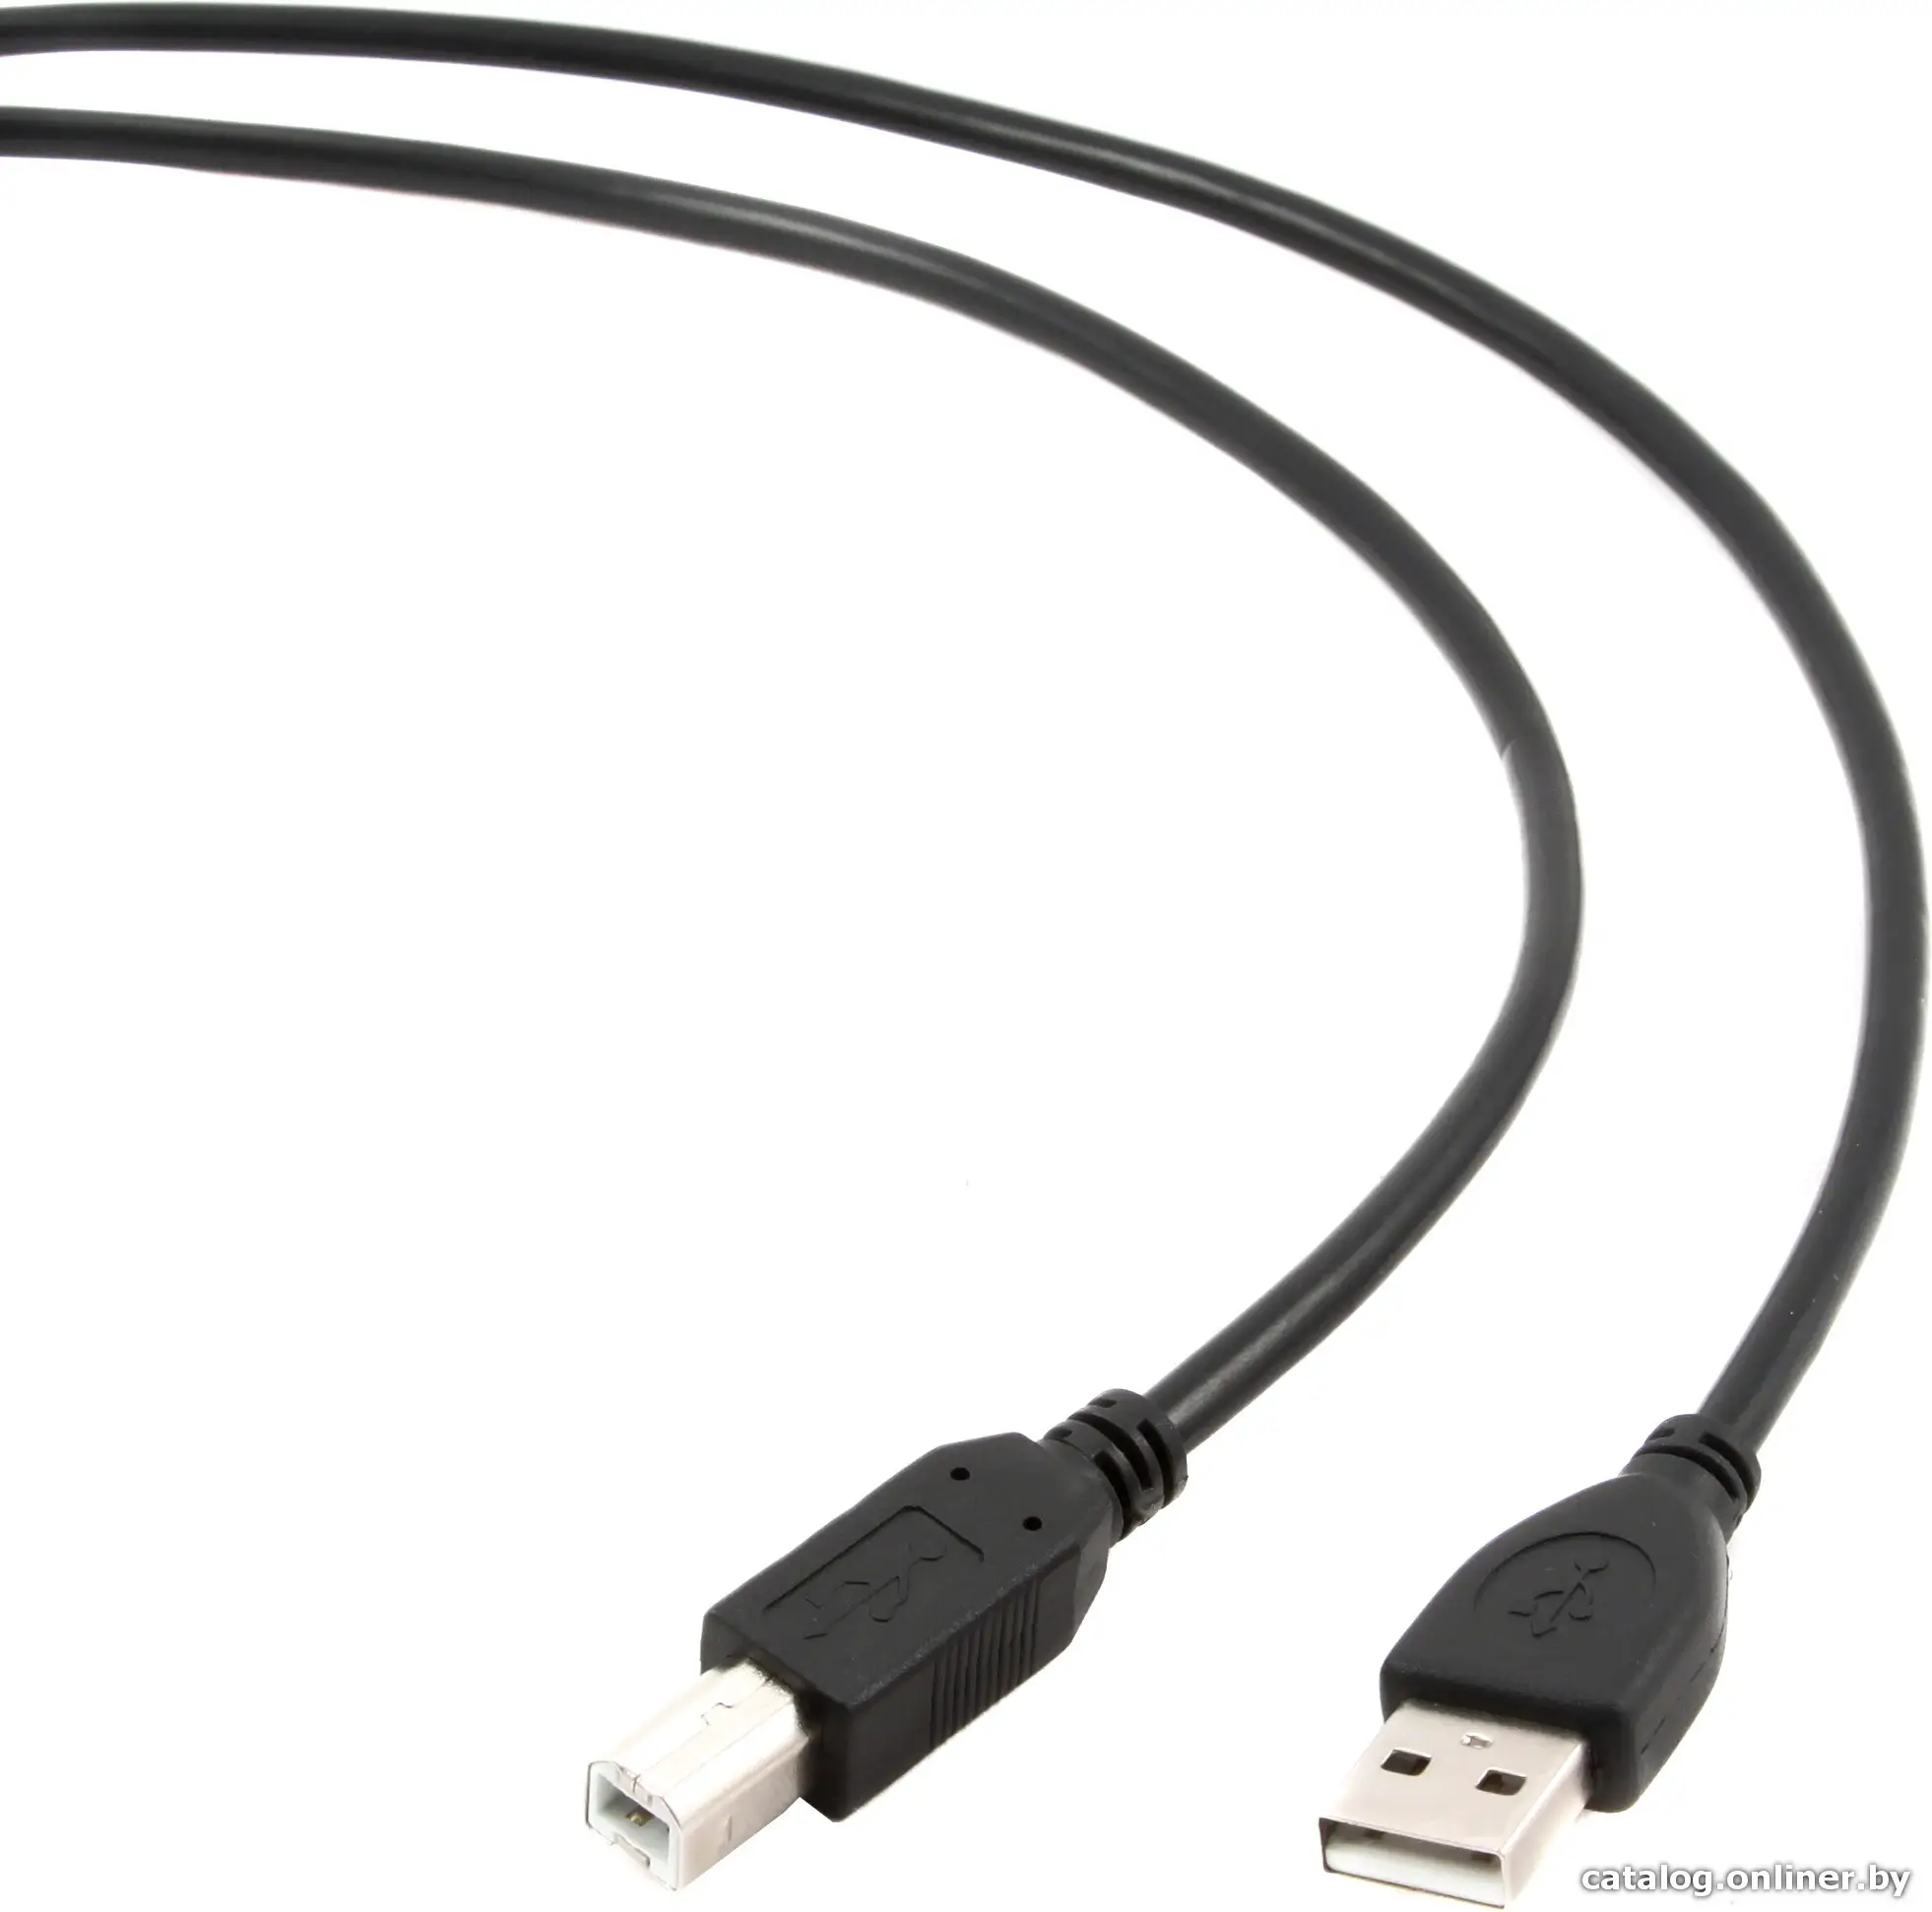 Купить Кабель Cablexpert CCP-USB2-AMBM-6, цена, опт и розница